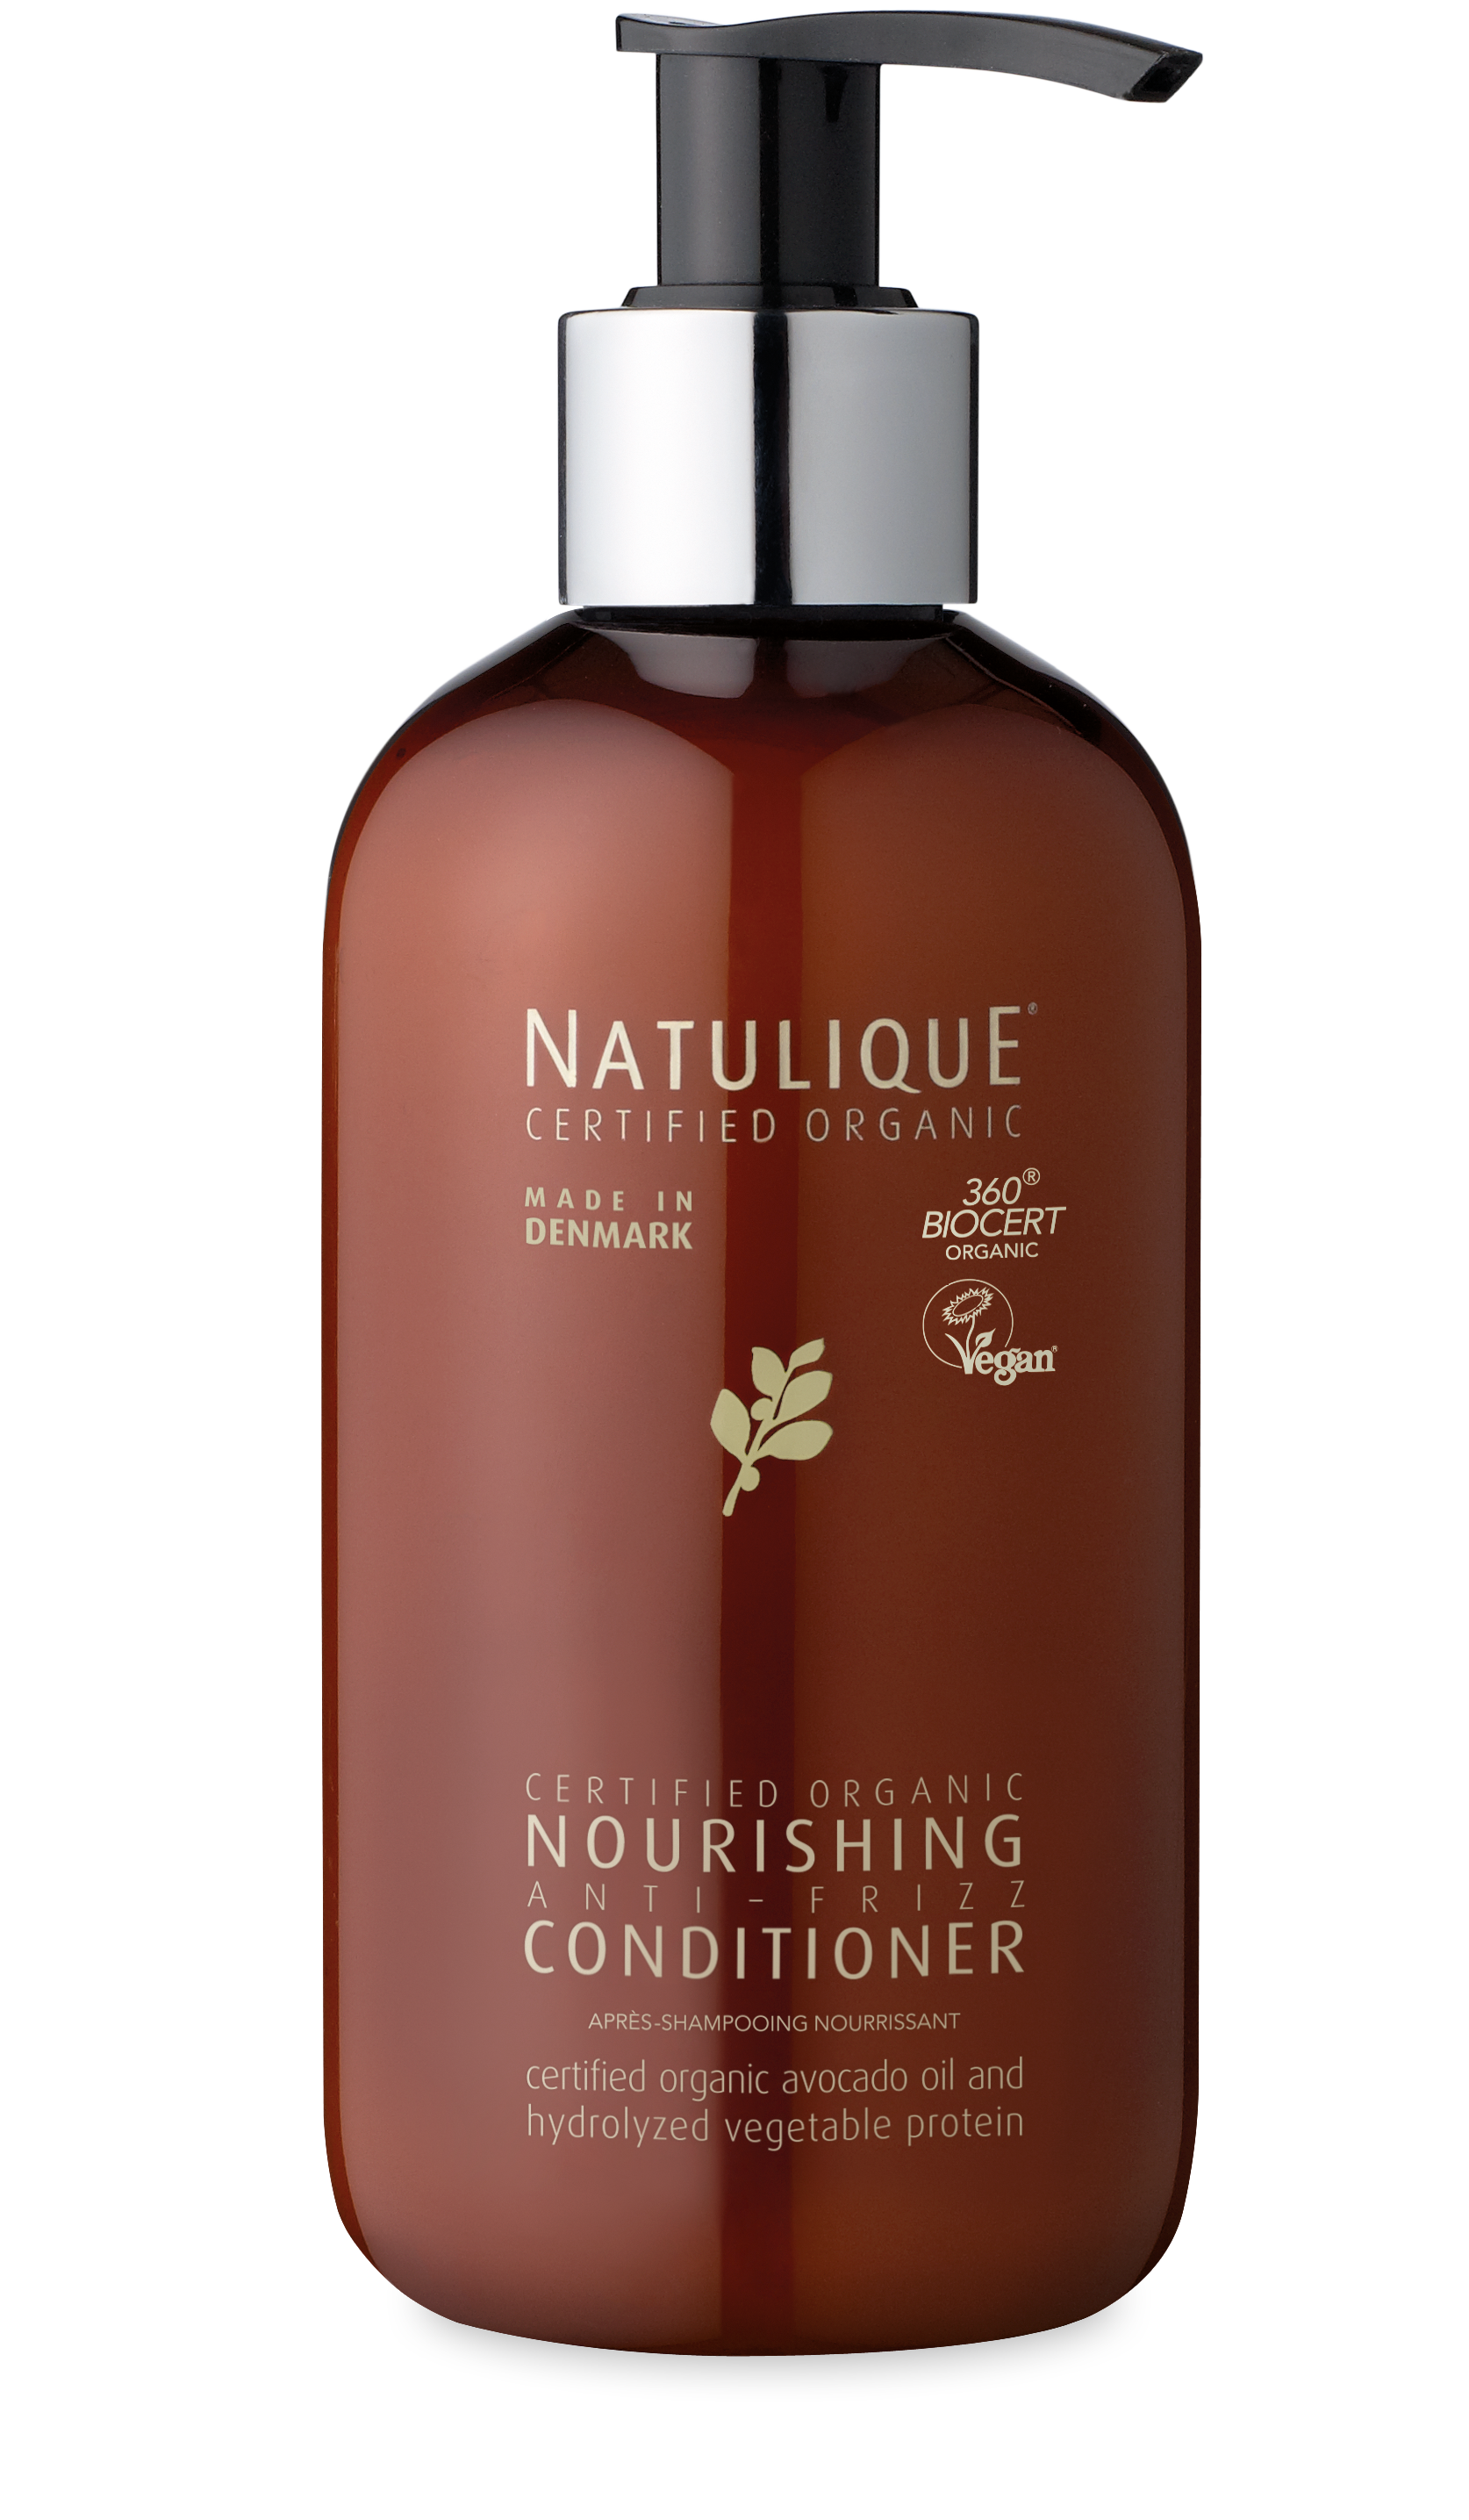 Natulique Nourishing – Balsam de hidratare,reconstructie si efect anti-frizz 250ml haircare.ro imagine noua